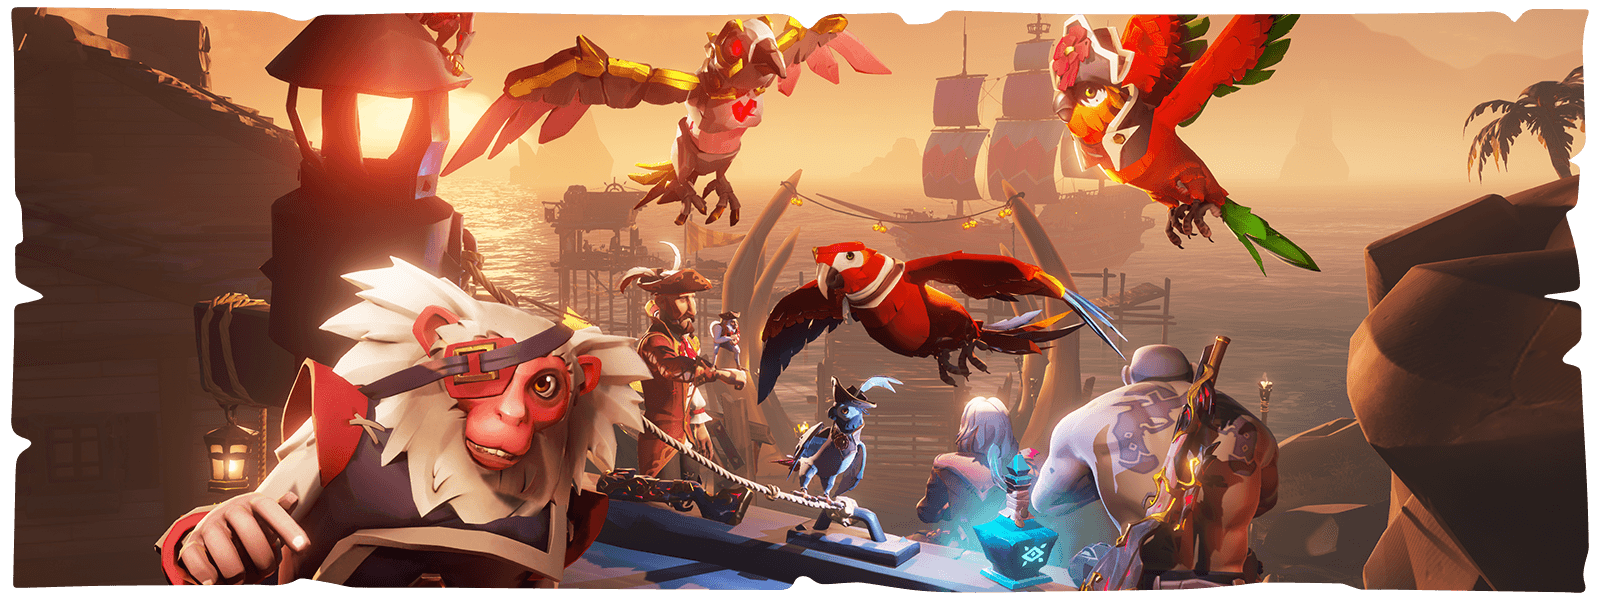 Charaktere, Papageien und ein Affe vor einem Schiffshafen aus Sea of Thieves